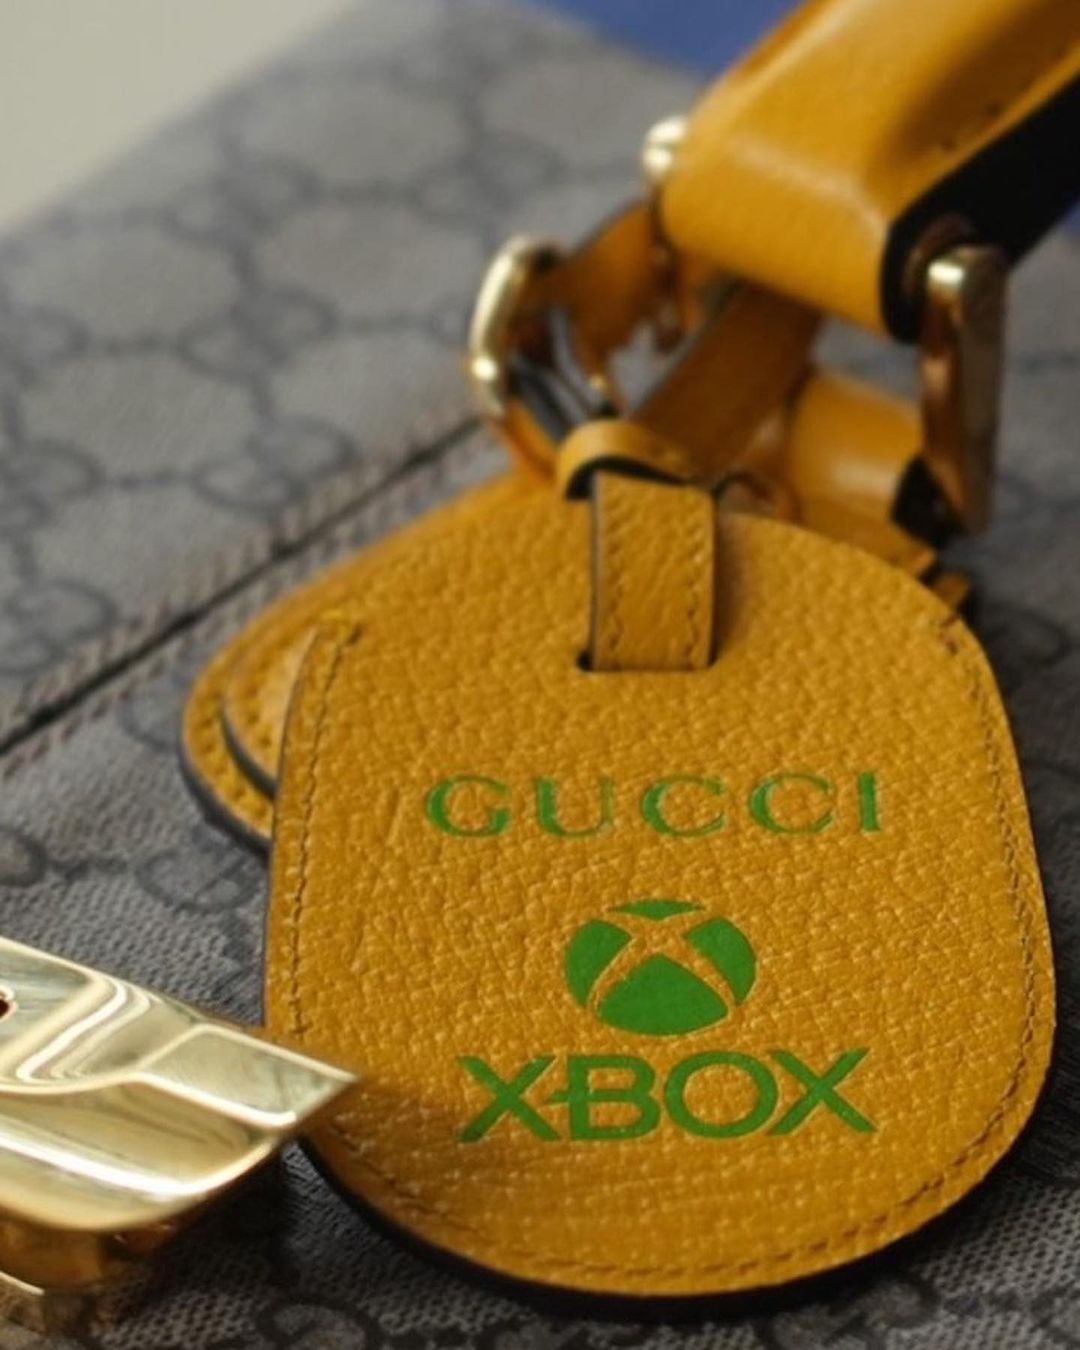 世界限定100台のシリアル入り gucci x Xbox コラボゲーム機が11/19から、グッチ渋谷パルコ、グッチオンライン限定で発売 (グッチ エックスボックス)